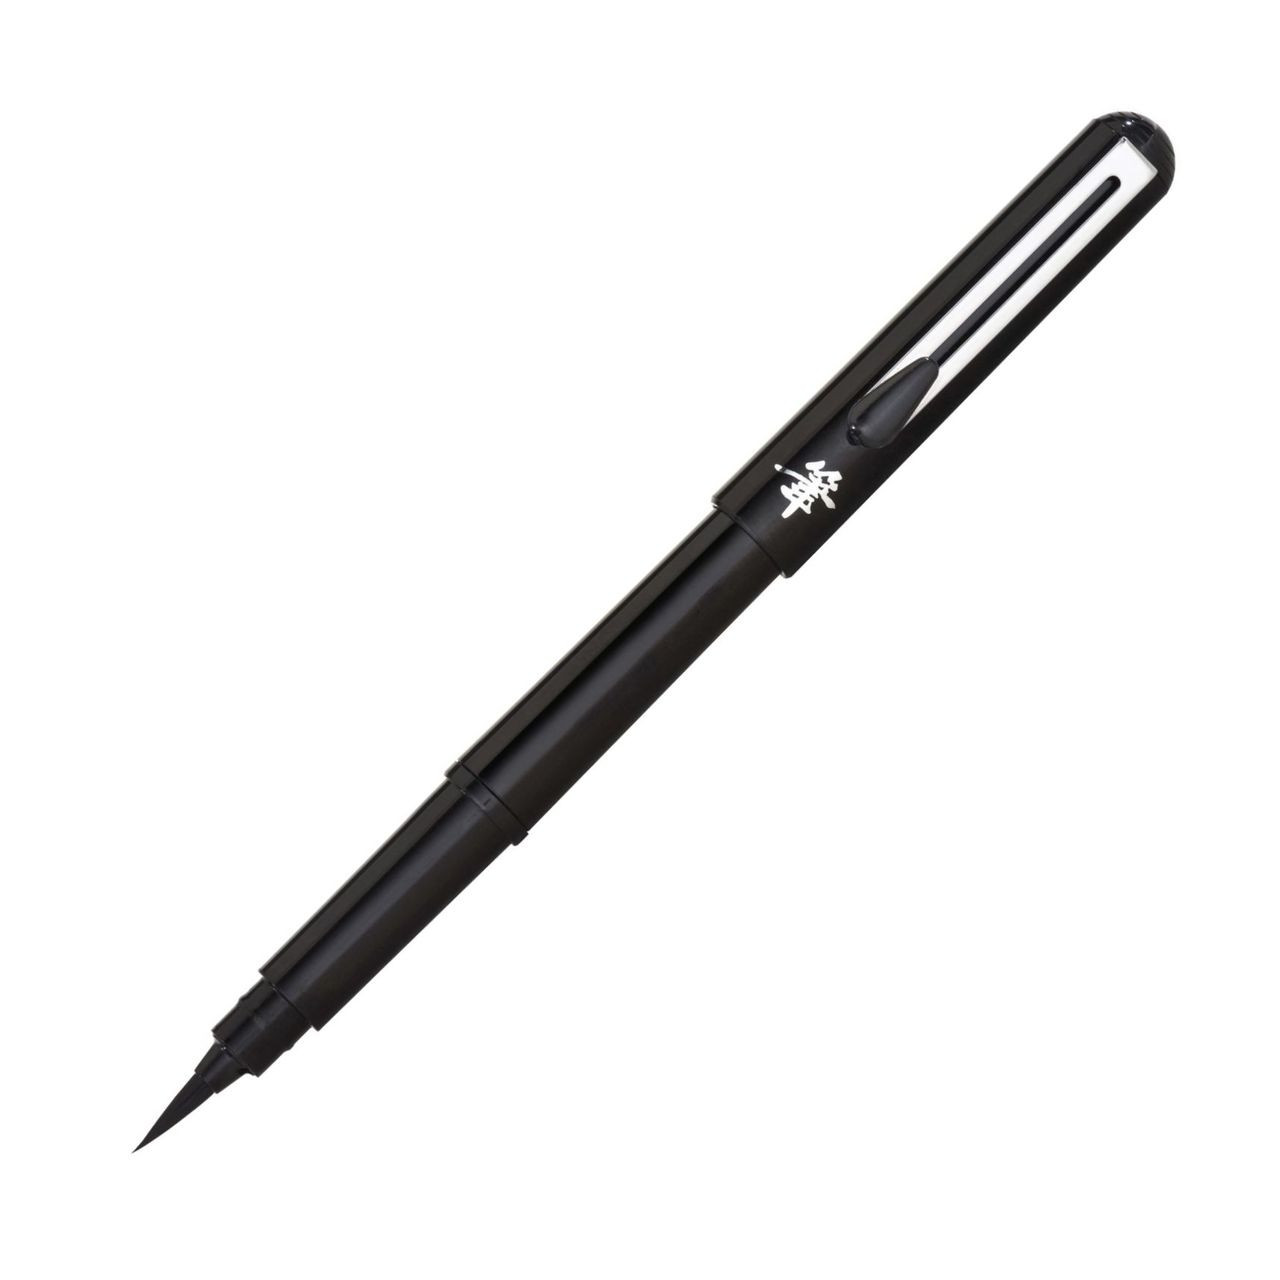 Pentel Touch Brush Pen Black, Pentel Brush Pen Gel Pens